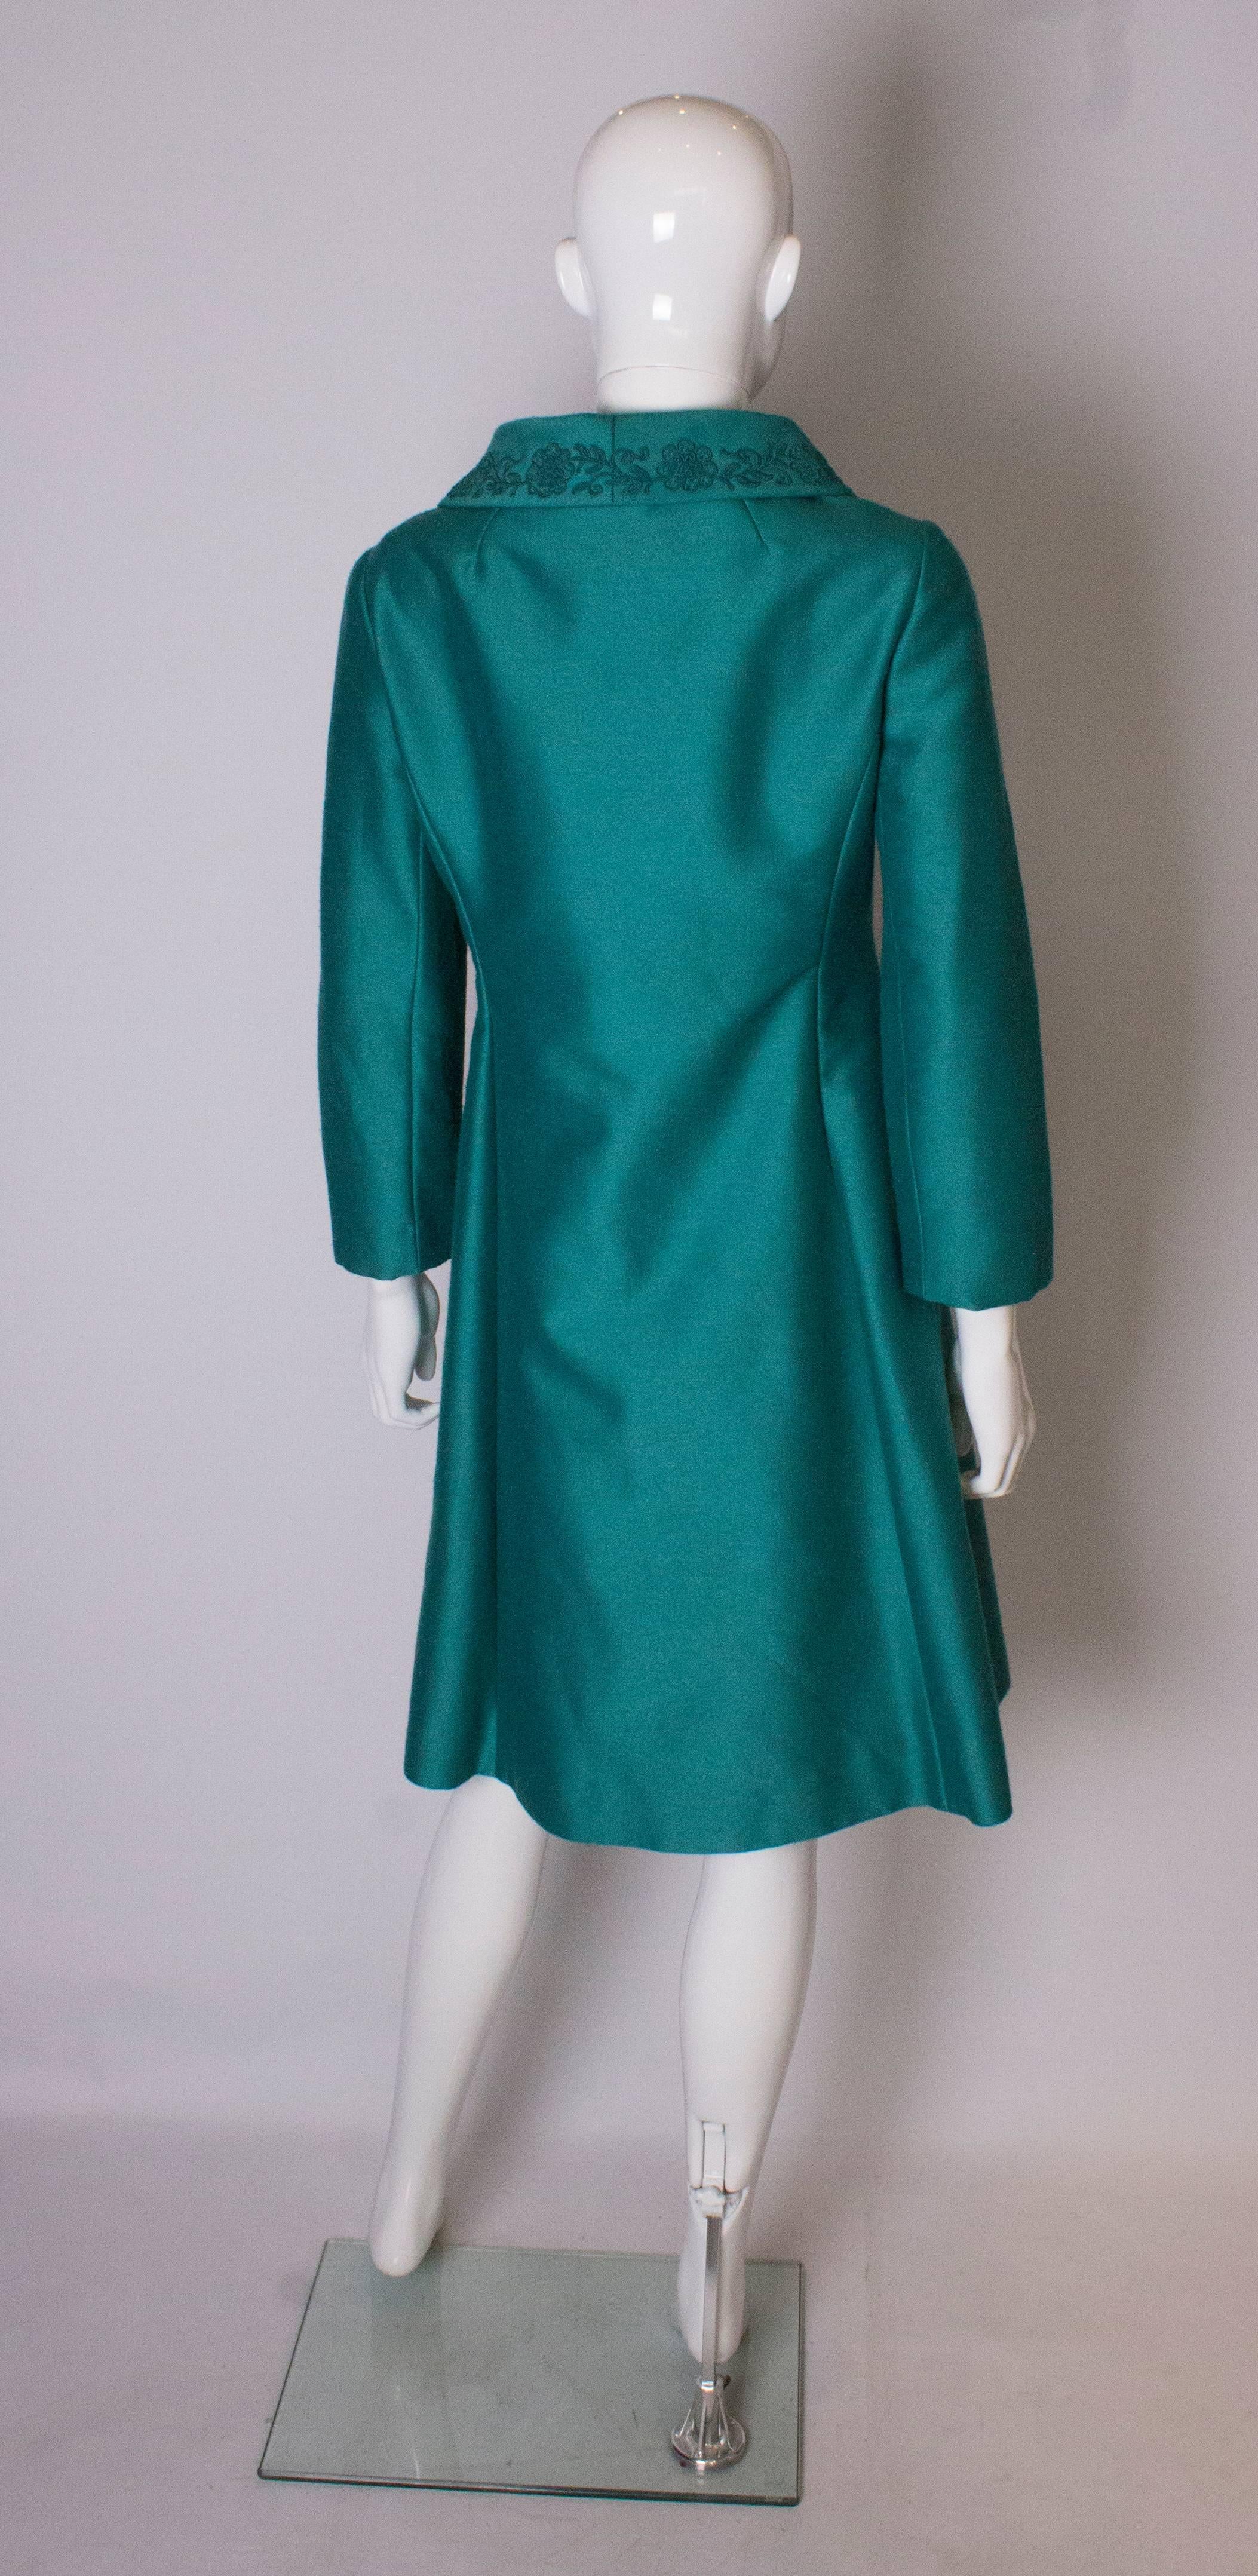 A Vintage 1960s Teal Coloured dress coat /evening jacket 1